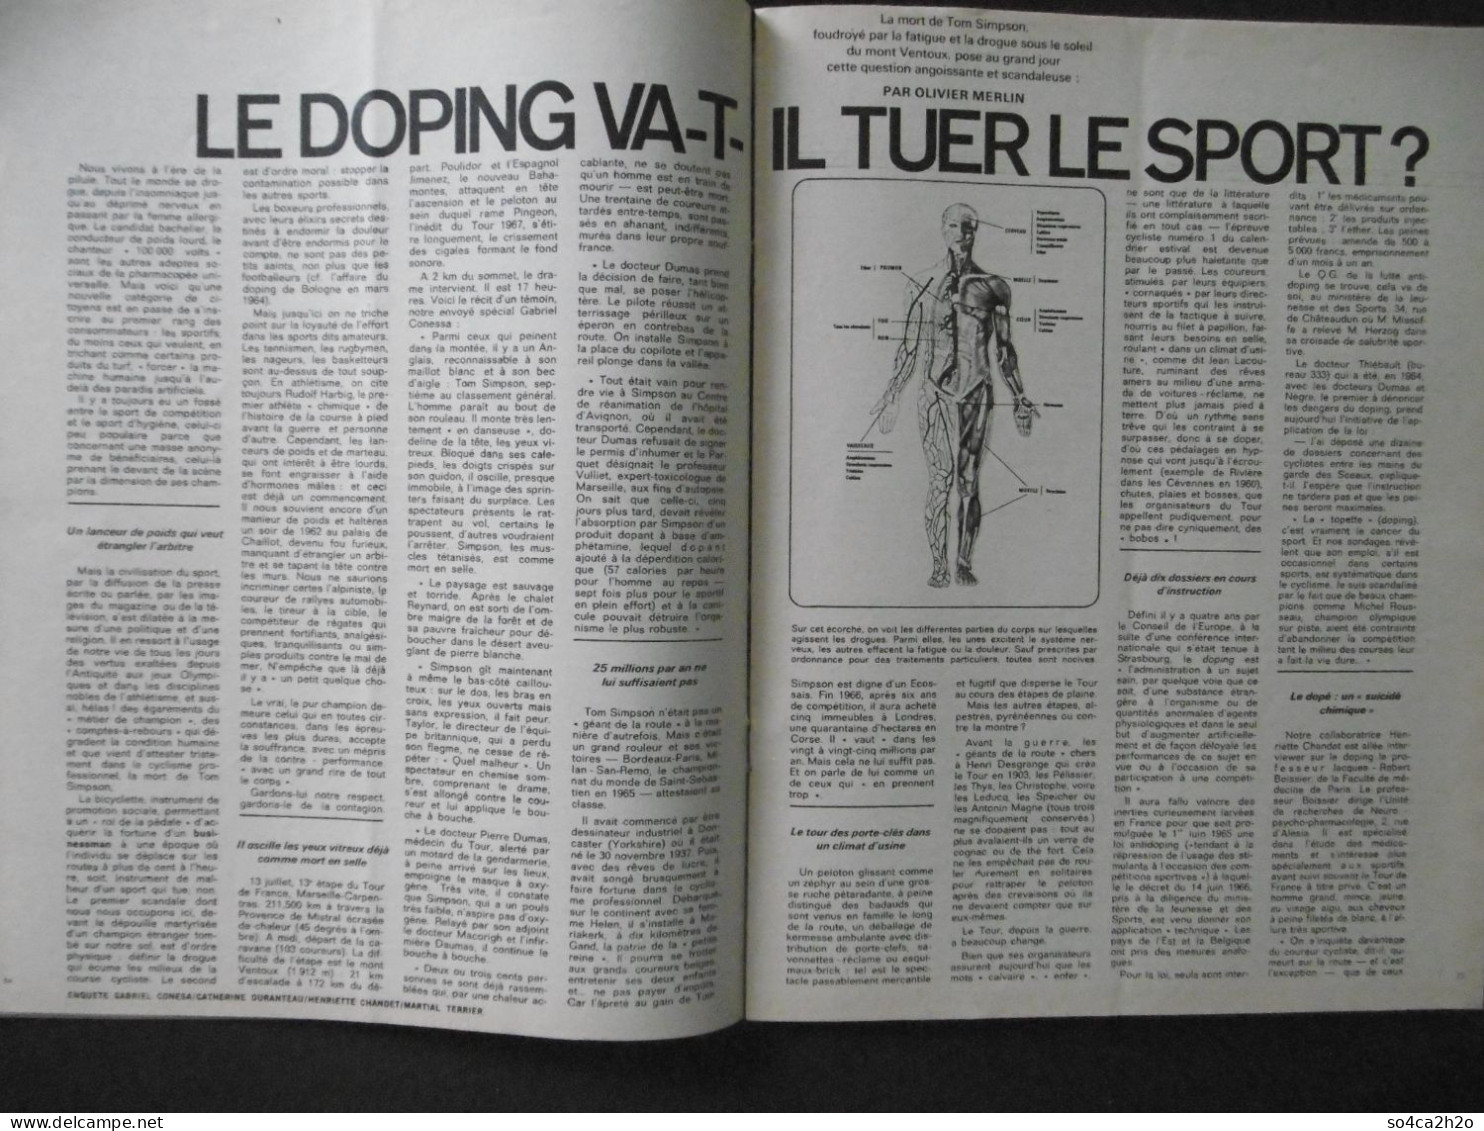 Paris Match N°955 29 Juillet 1967 Le Drame Du Tour, Le Doping Va T'il Tuer Le Sport; Israël Devant Sa Victoire - Allgemeine Literatur